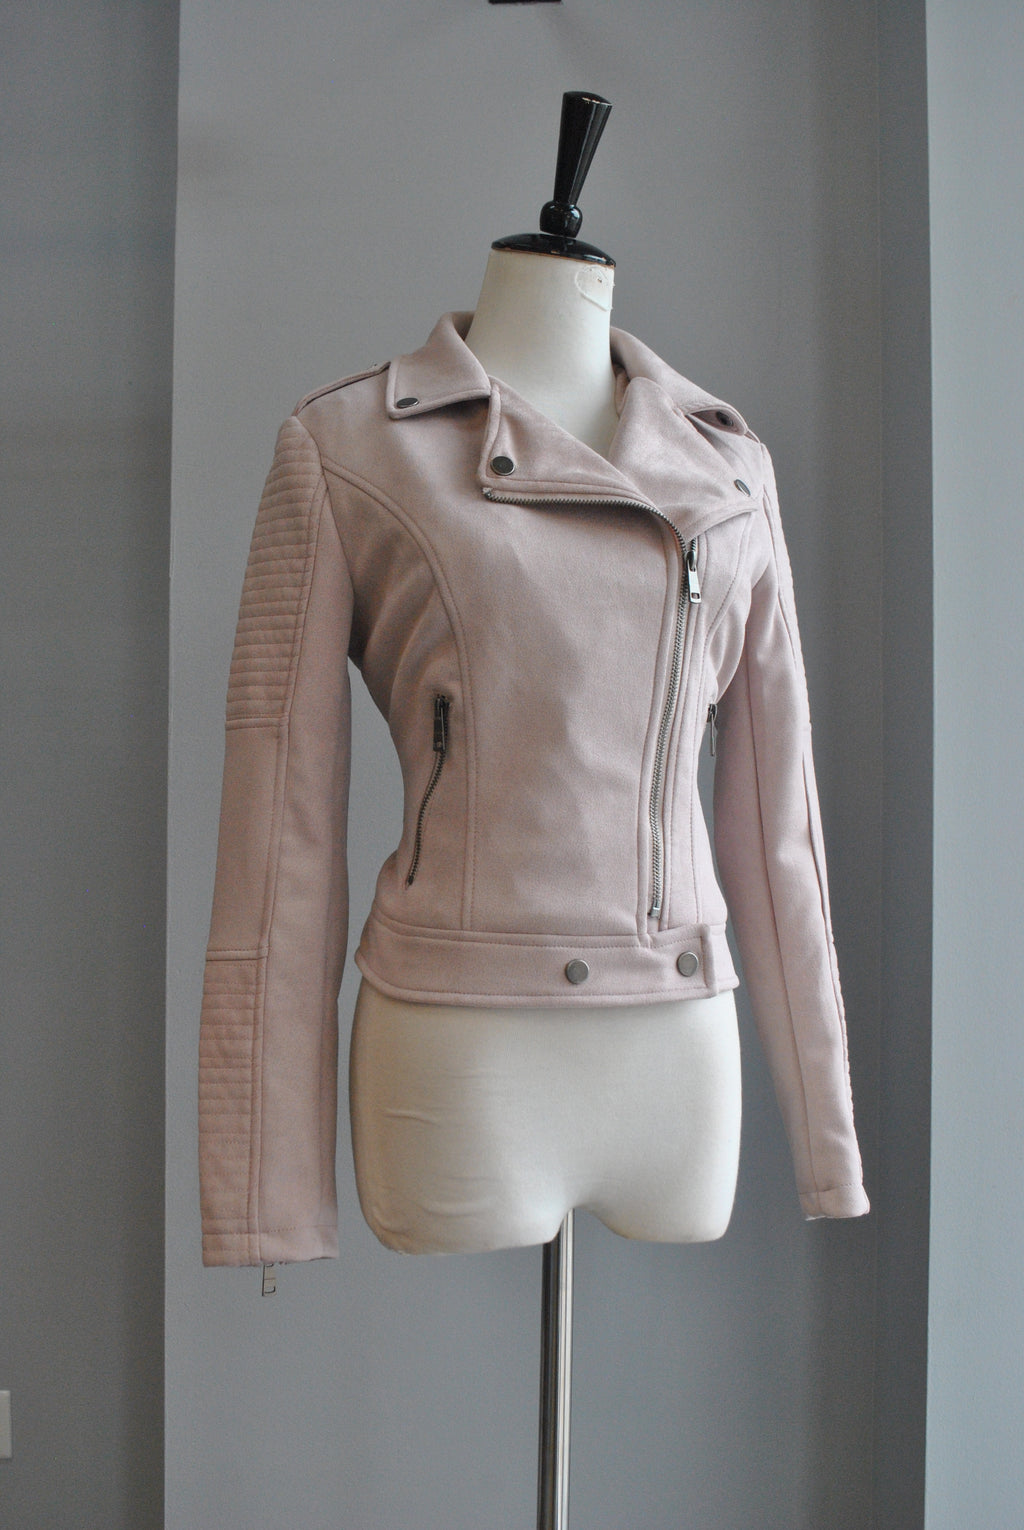 Pink Leather Jacket, Shopbop Fashion